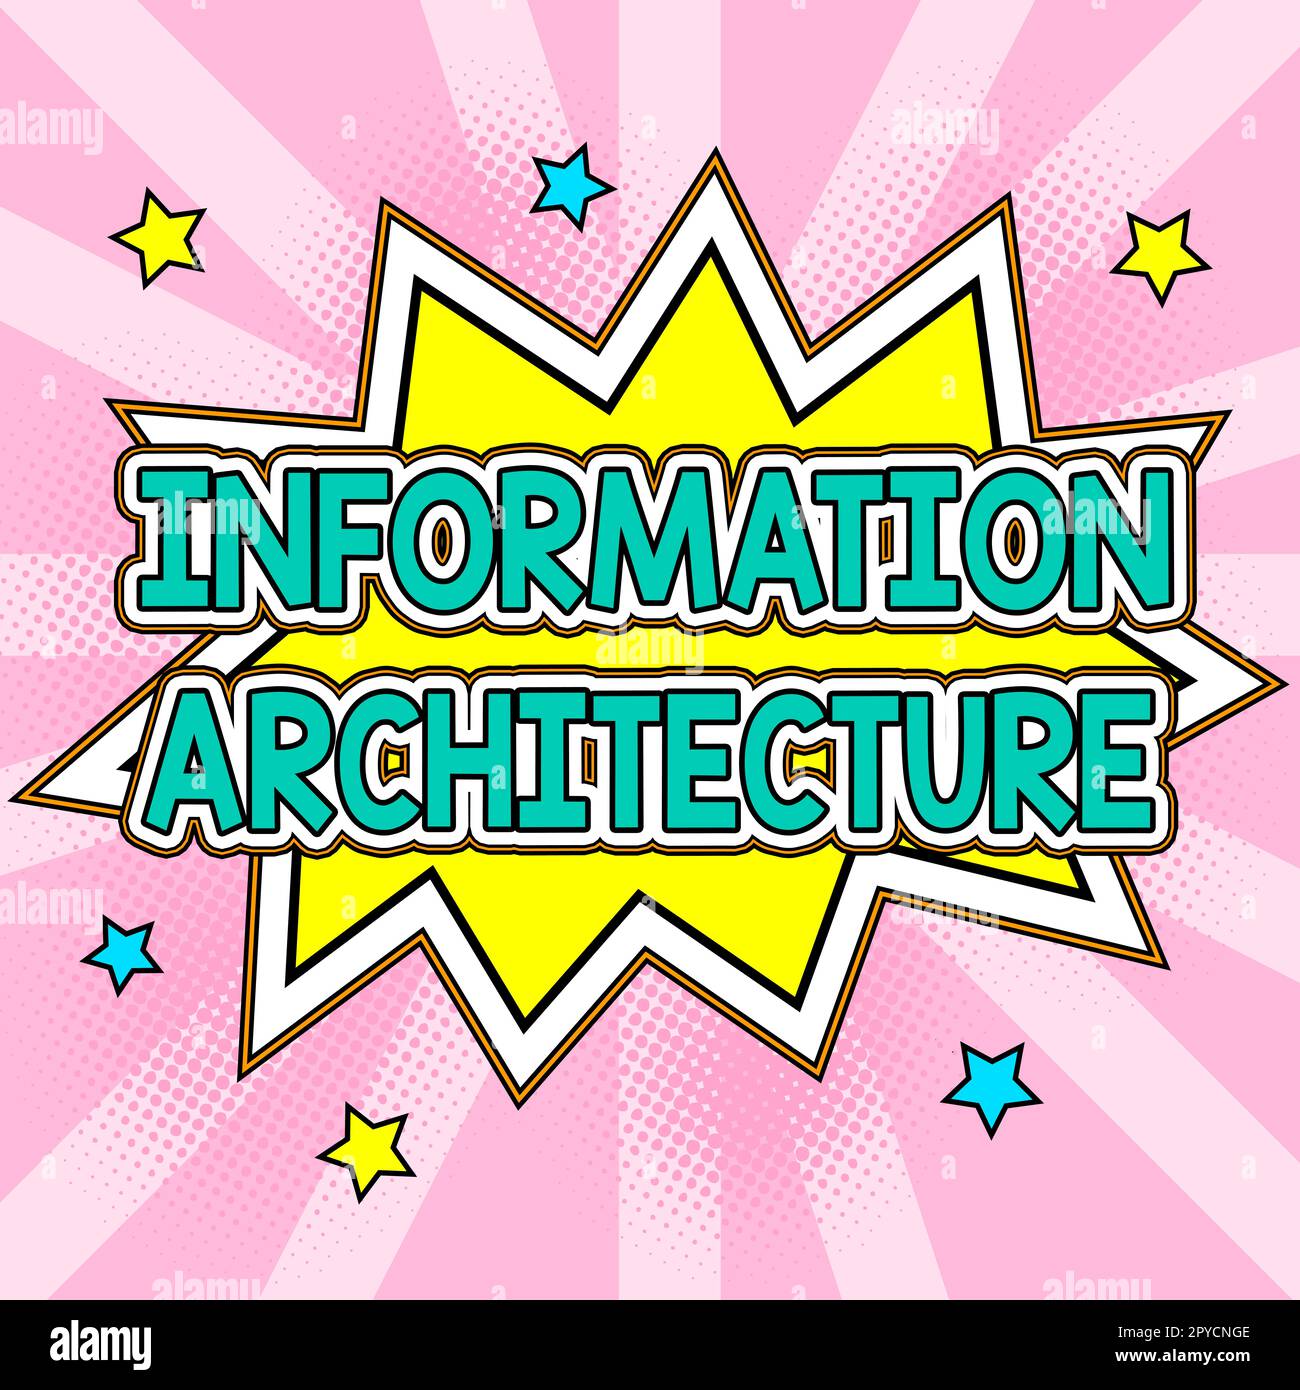 Architecture des informations d'affichage conceptuel. Mot pour les environnements d'informations partagées de conception structurelle Banque D'Images